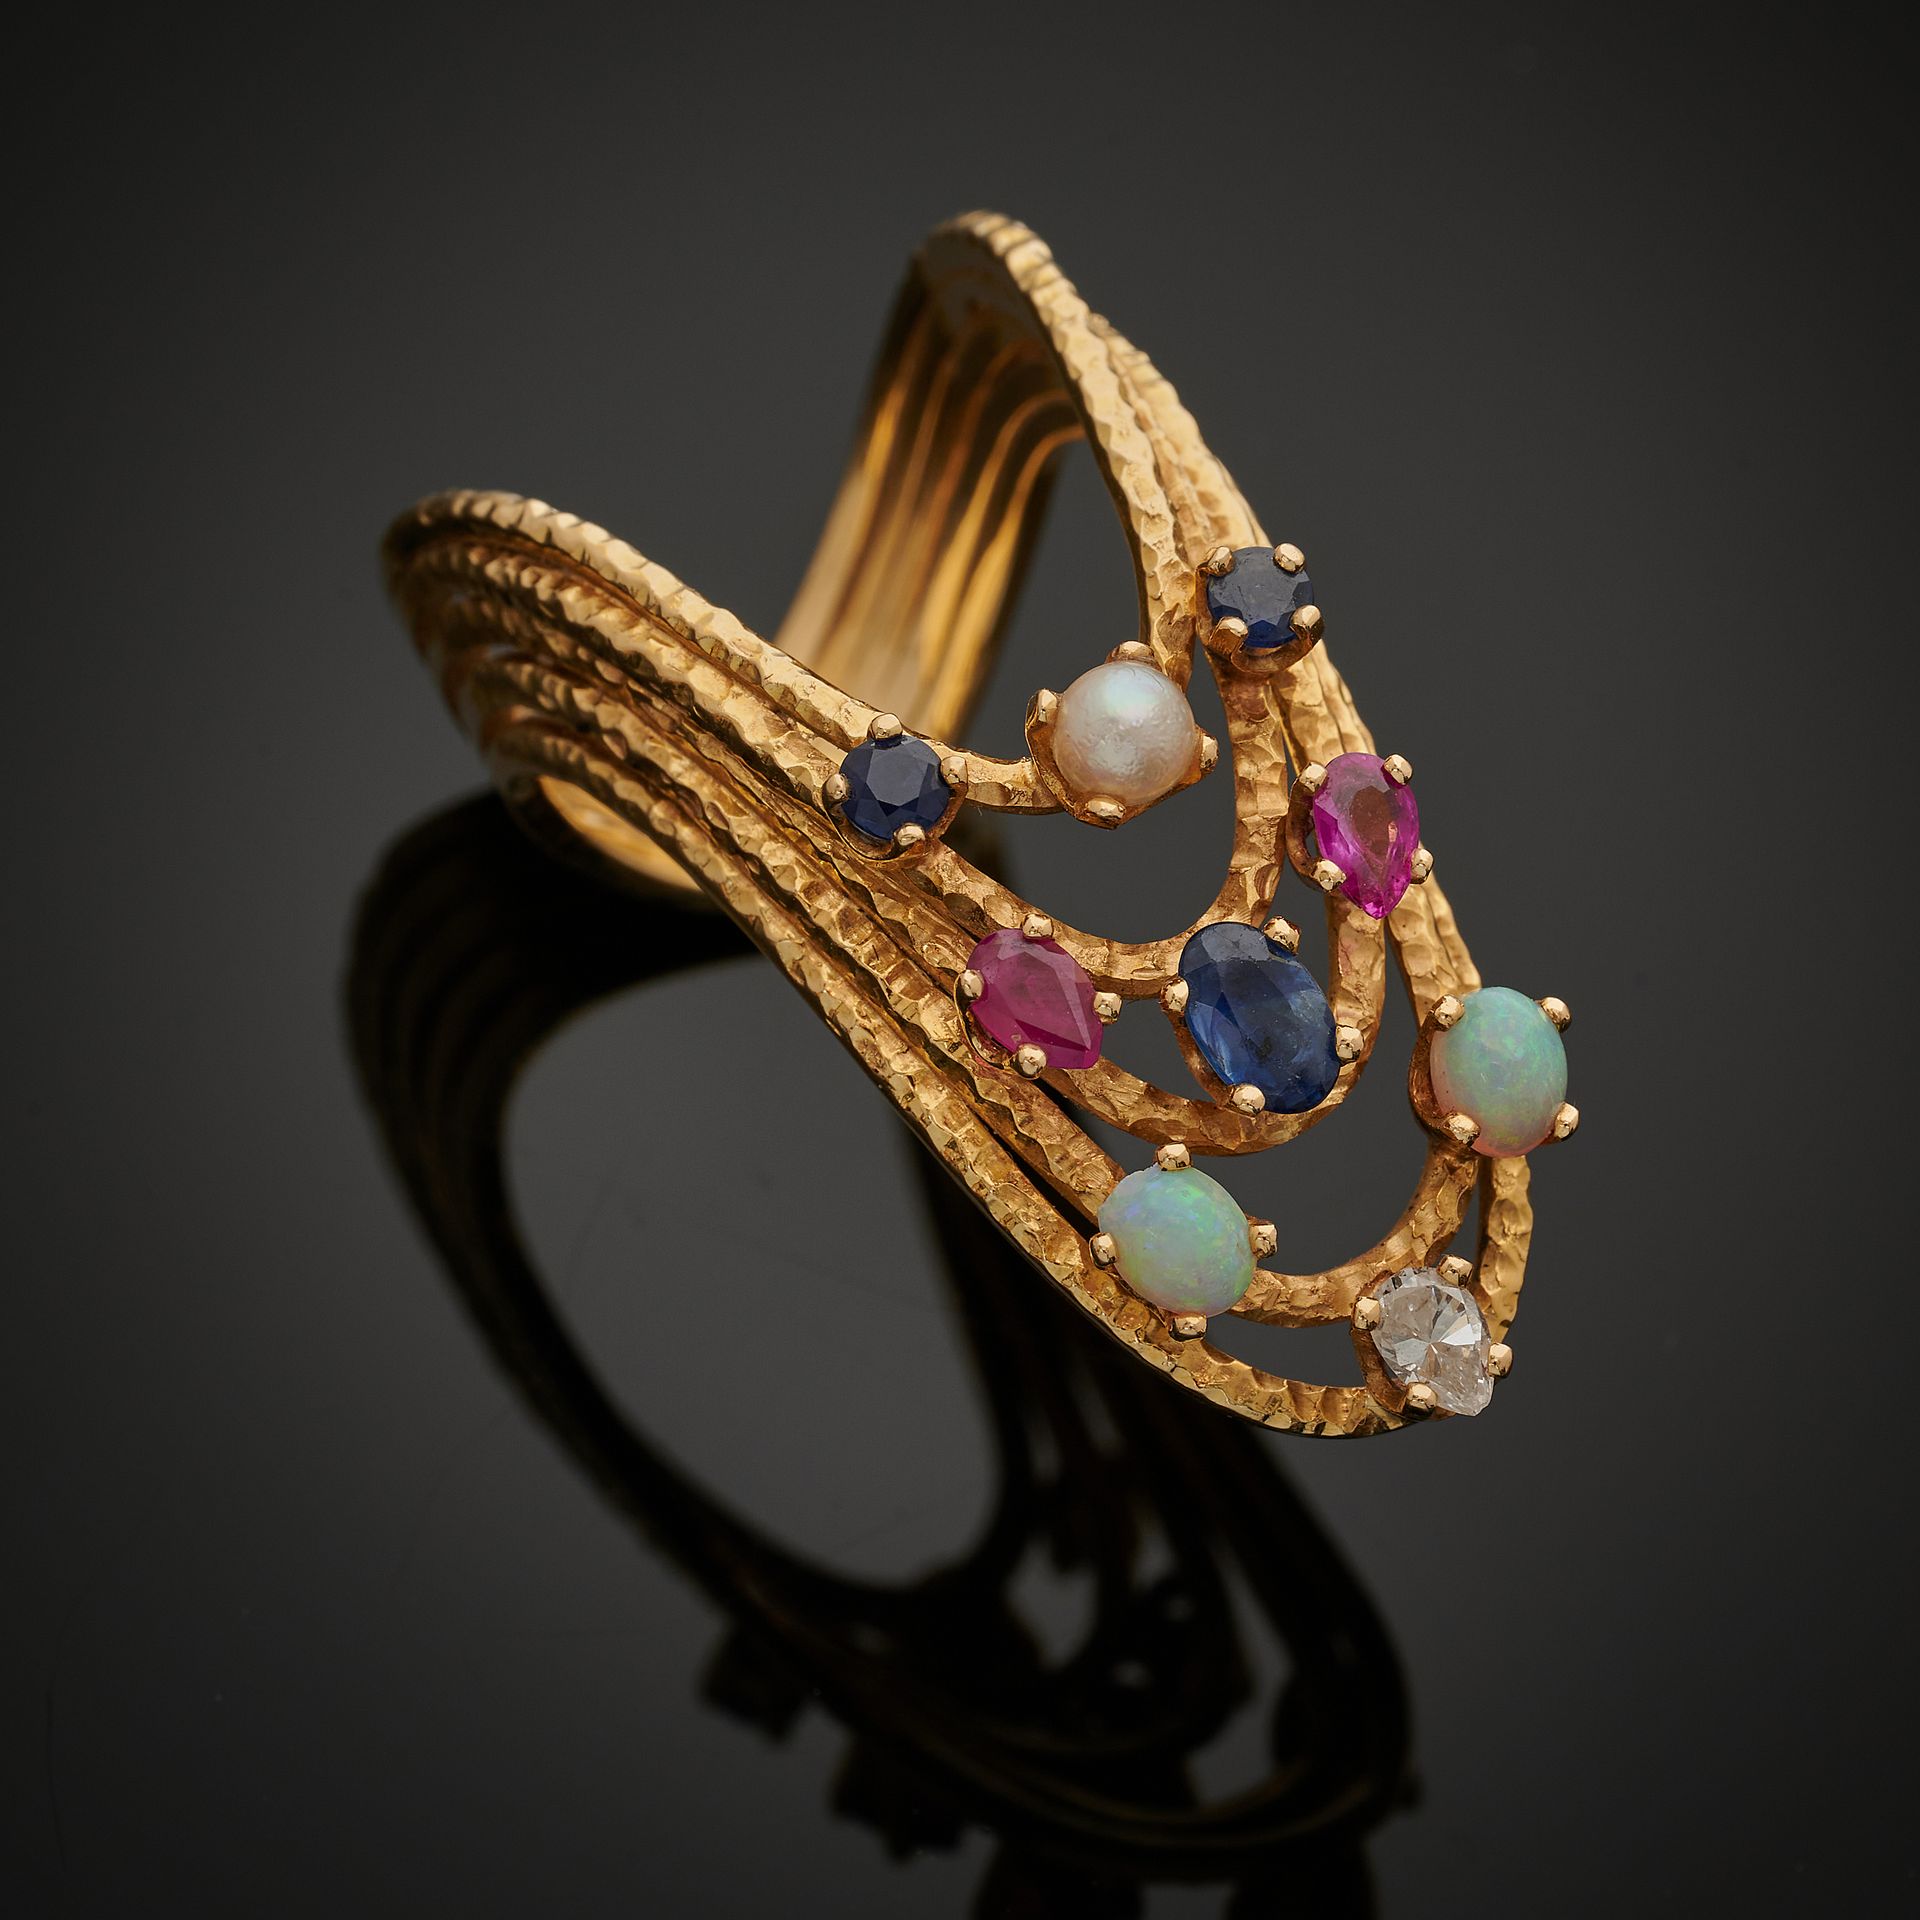 Null 750毫米黄金设计师戒指，五个蜿蜒的主体镶嵌着一颗小梨形钻石（震惊）、凸圆形蛋白石、梨形红宝石、椭圆形和圆形蓝宝石以及一颗幻想珍珠。
TDD: 54
&hellip;